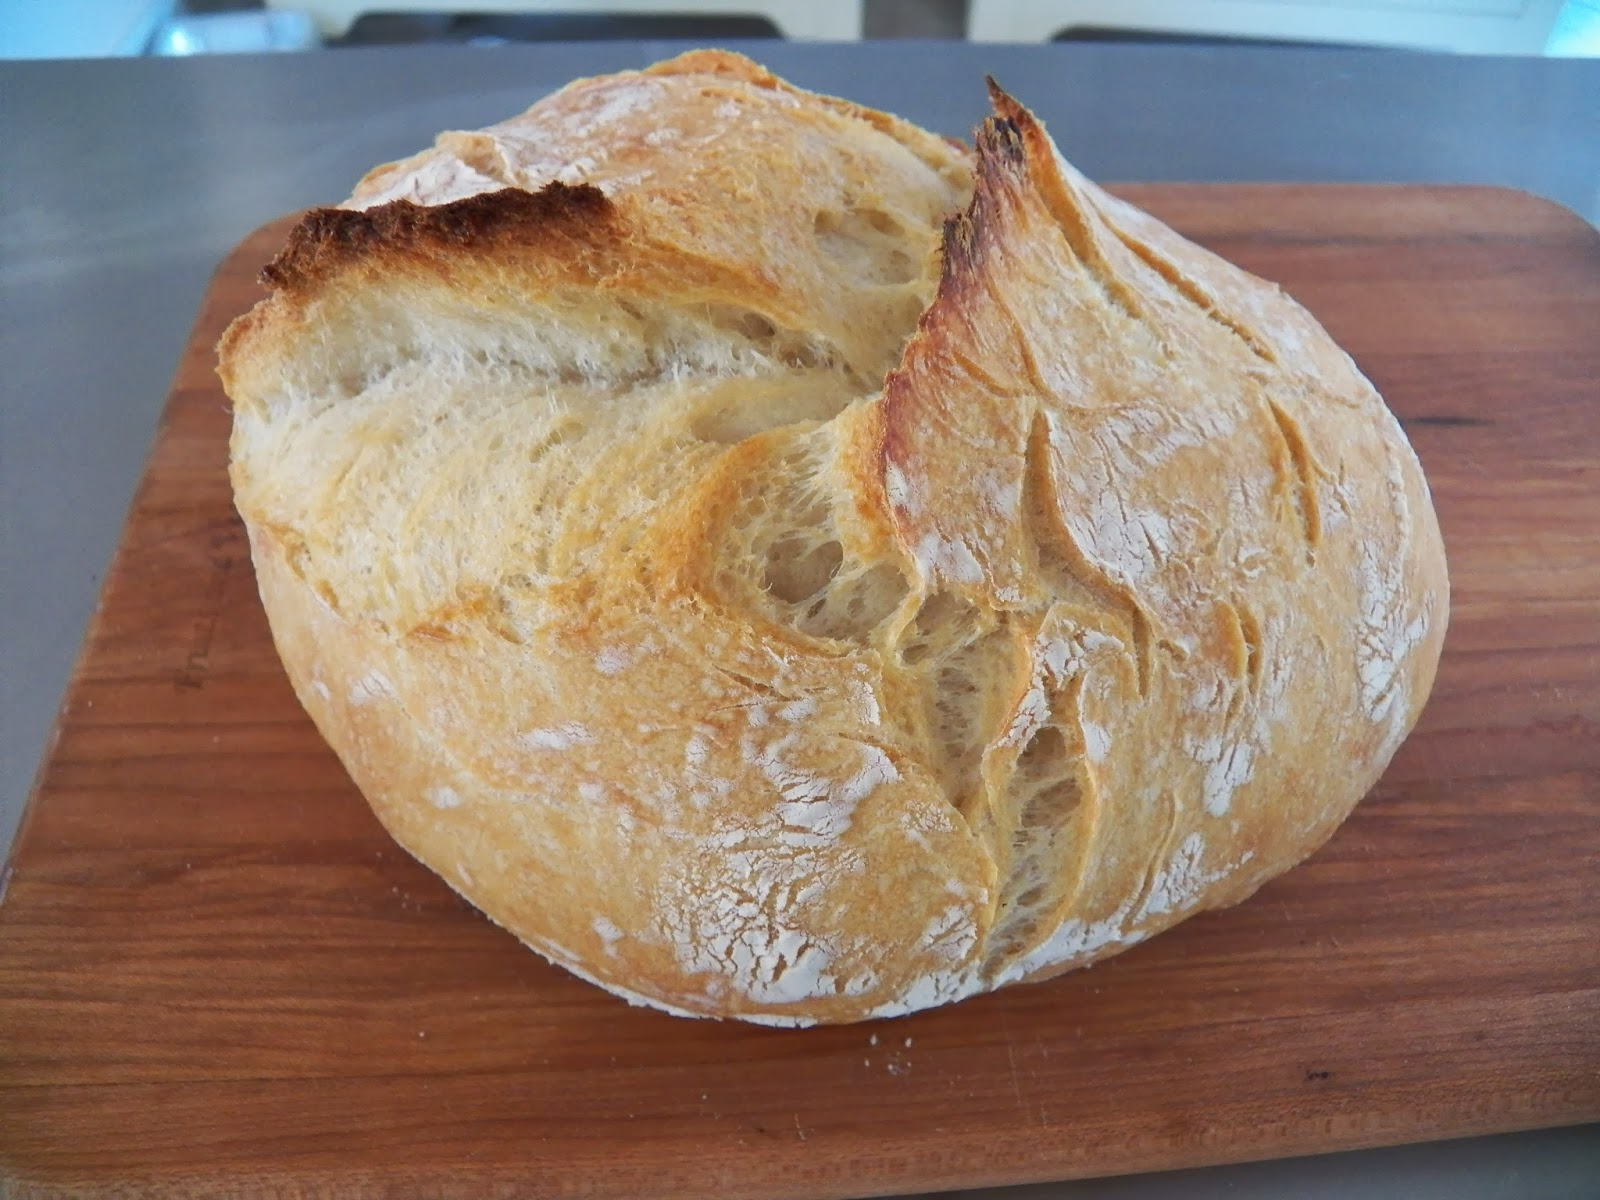 New: Bread Saws